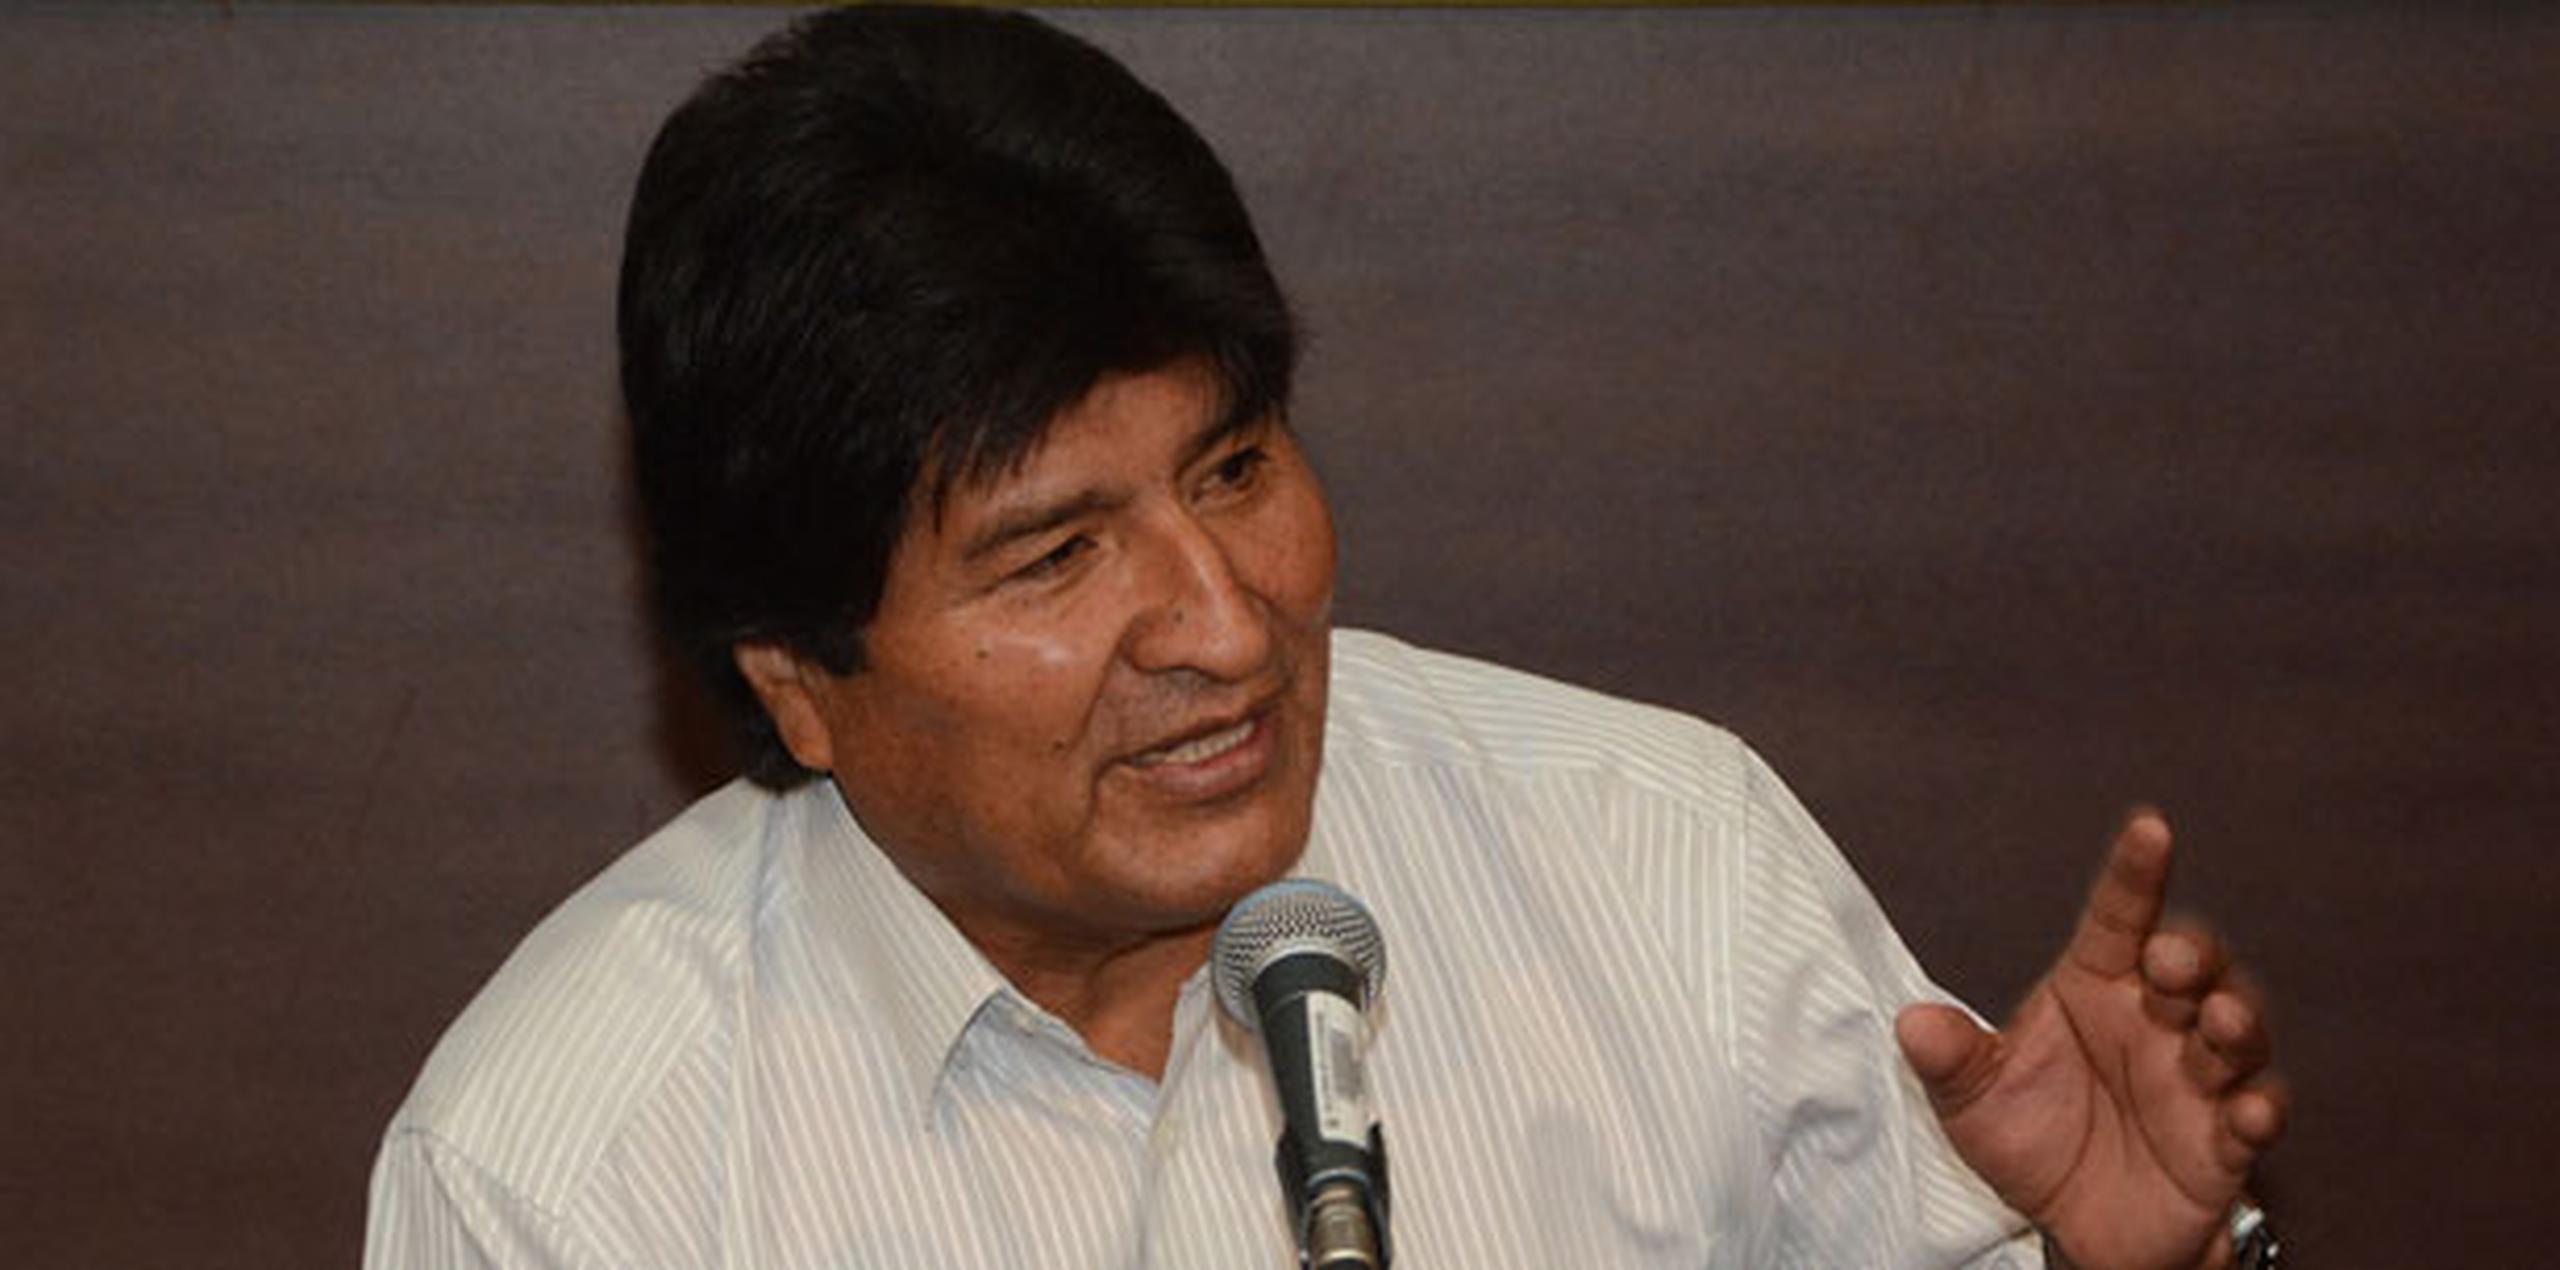 Los graves problemas de la administración de la Justicia en Bolivia, que afectan los derechos humanos, no son nuevos pero se han agravado al no haber funcionado las reformas aplicadas por el Gobierno de Evo Morales. (EFE)